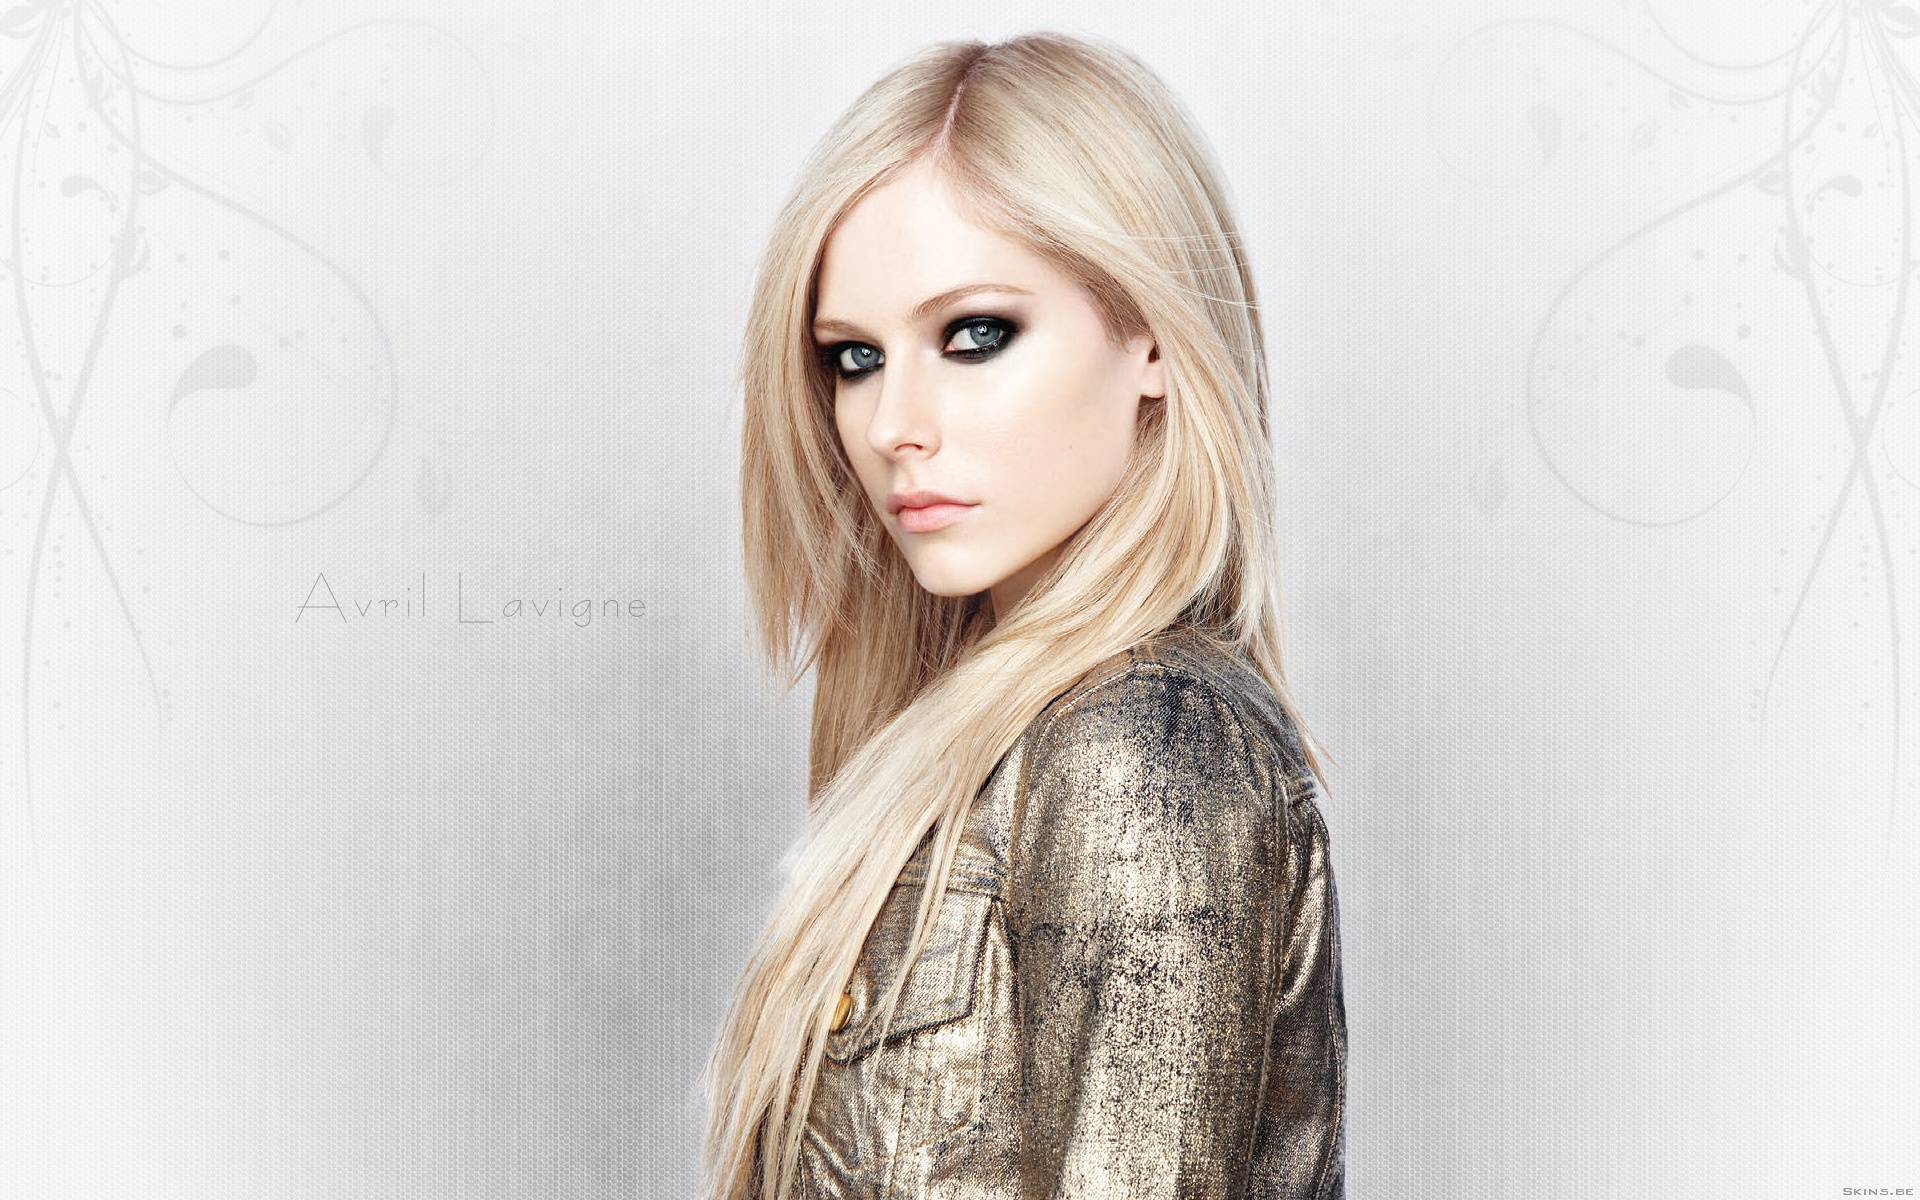  Avril Lavigne Cellphone FHD pic